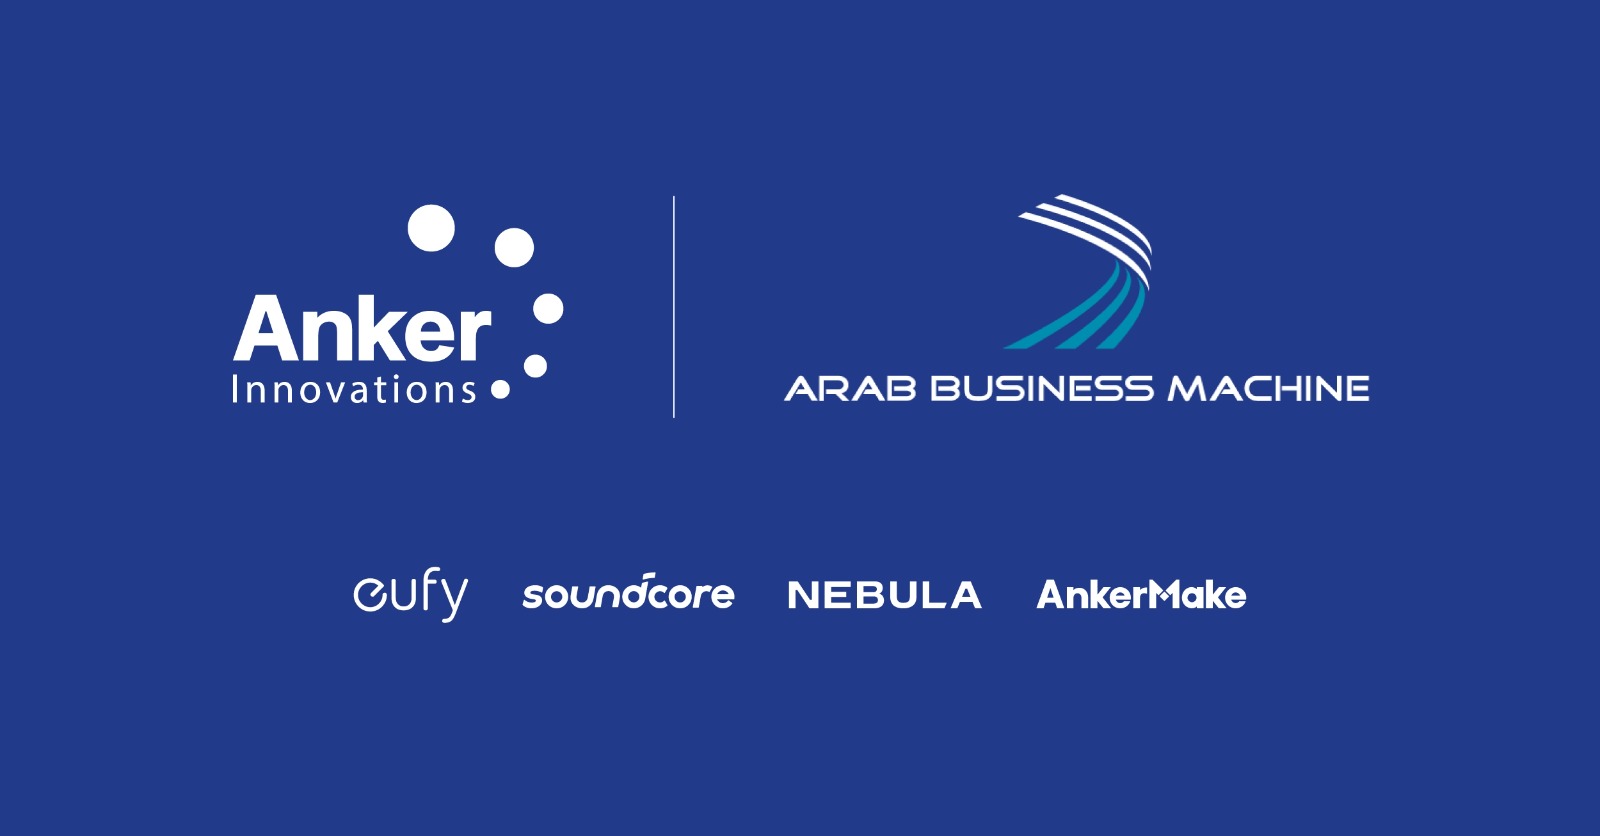 "انكر إنوفيشنز" anker innovations تبرم شراكة مع "إيه بي إم" الكويت (abm kuwait) لتوزيع منتجاتها محلياً في الكويت